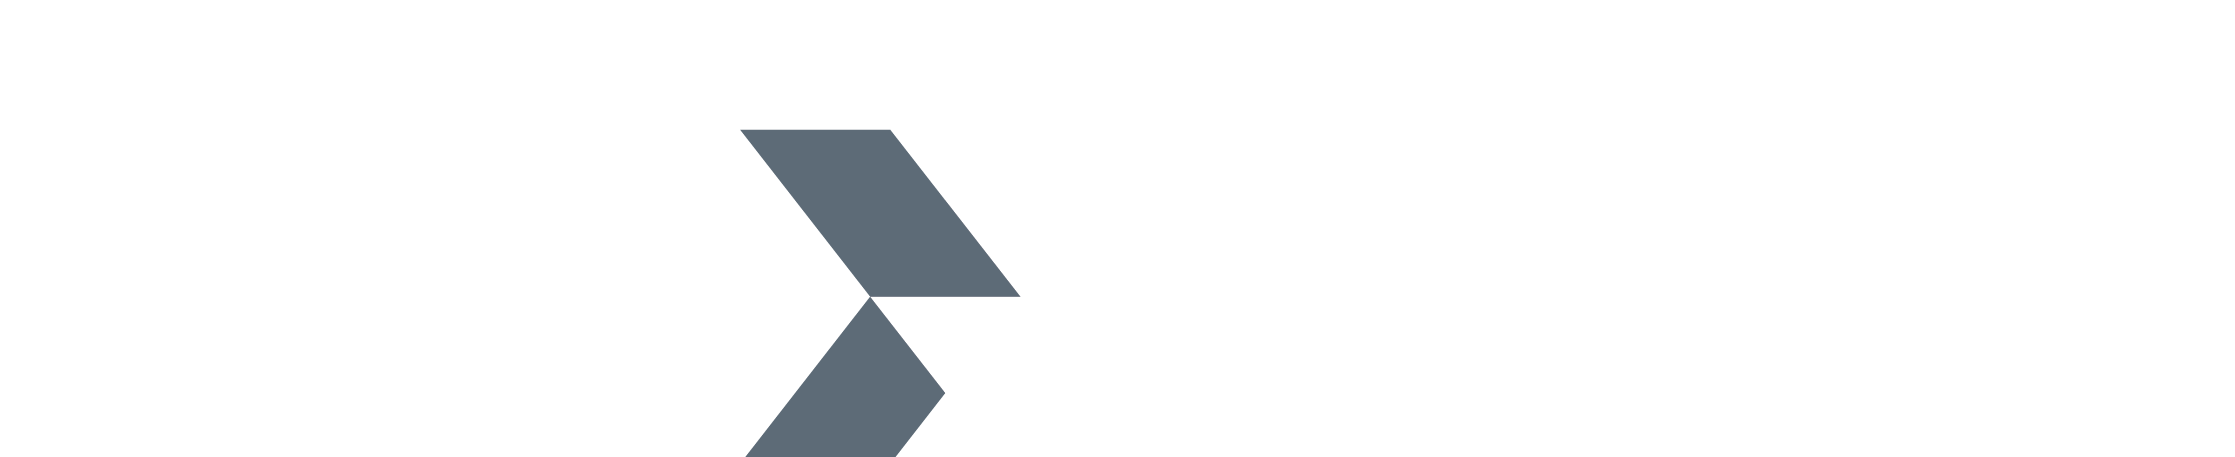 Orixcom logo reverse